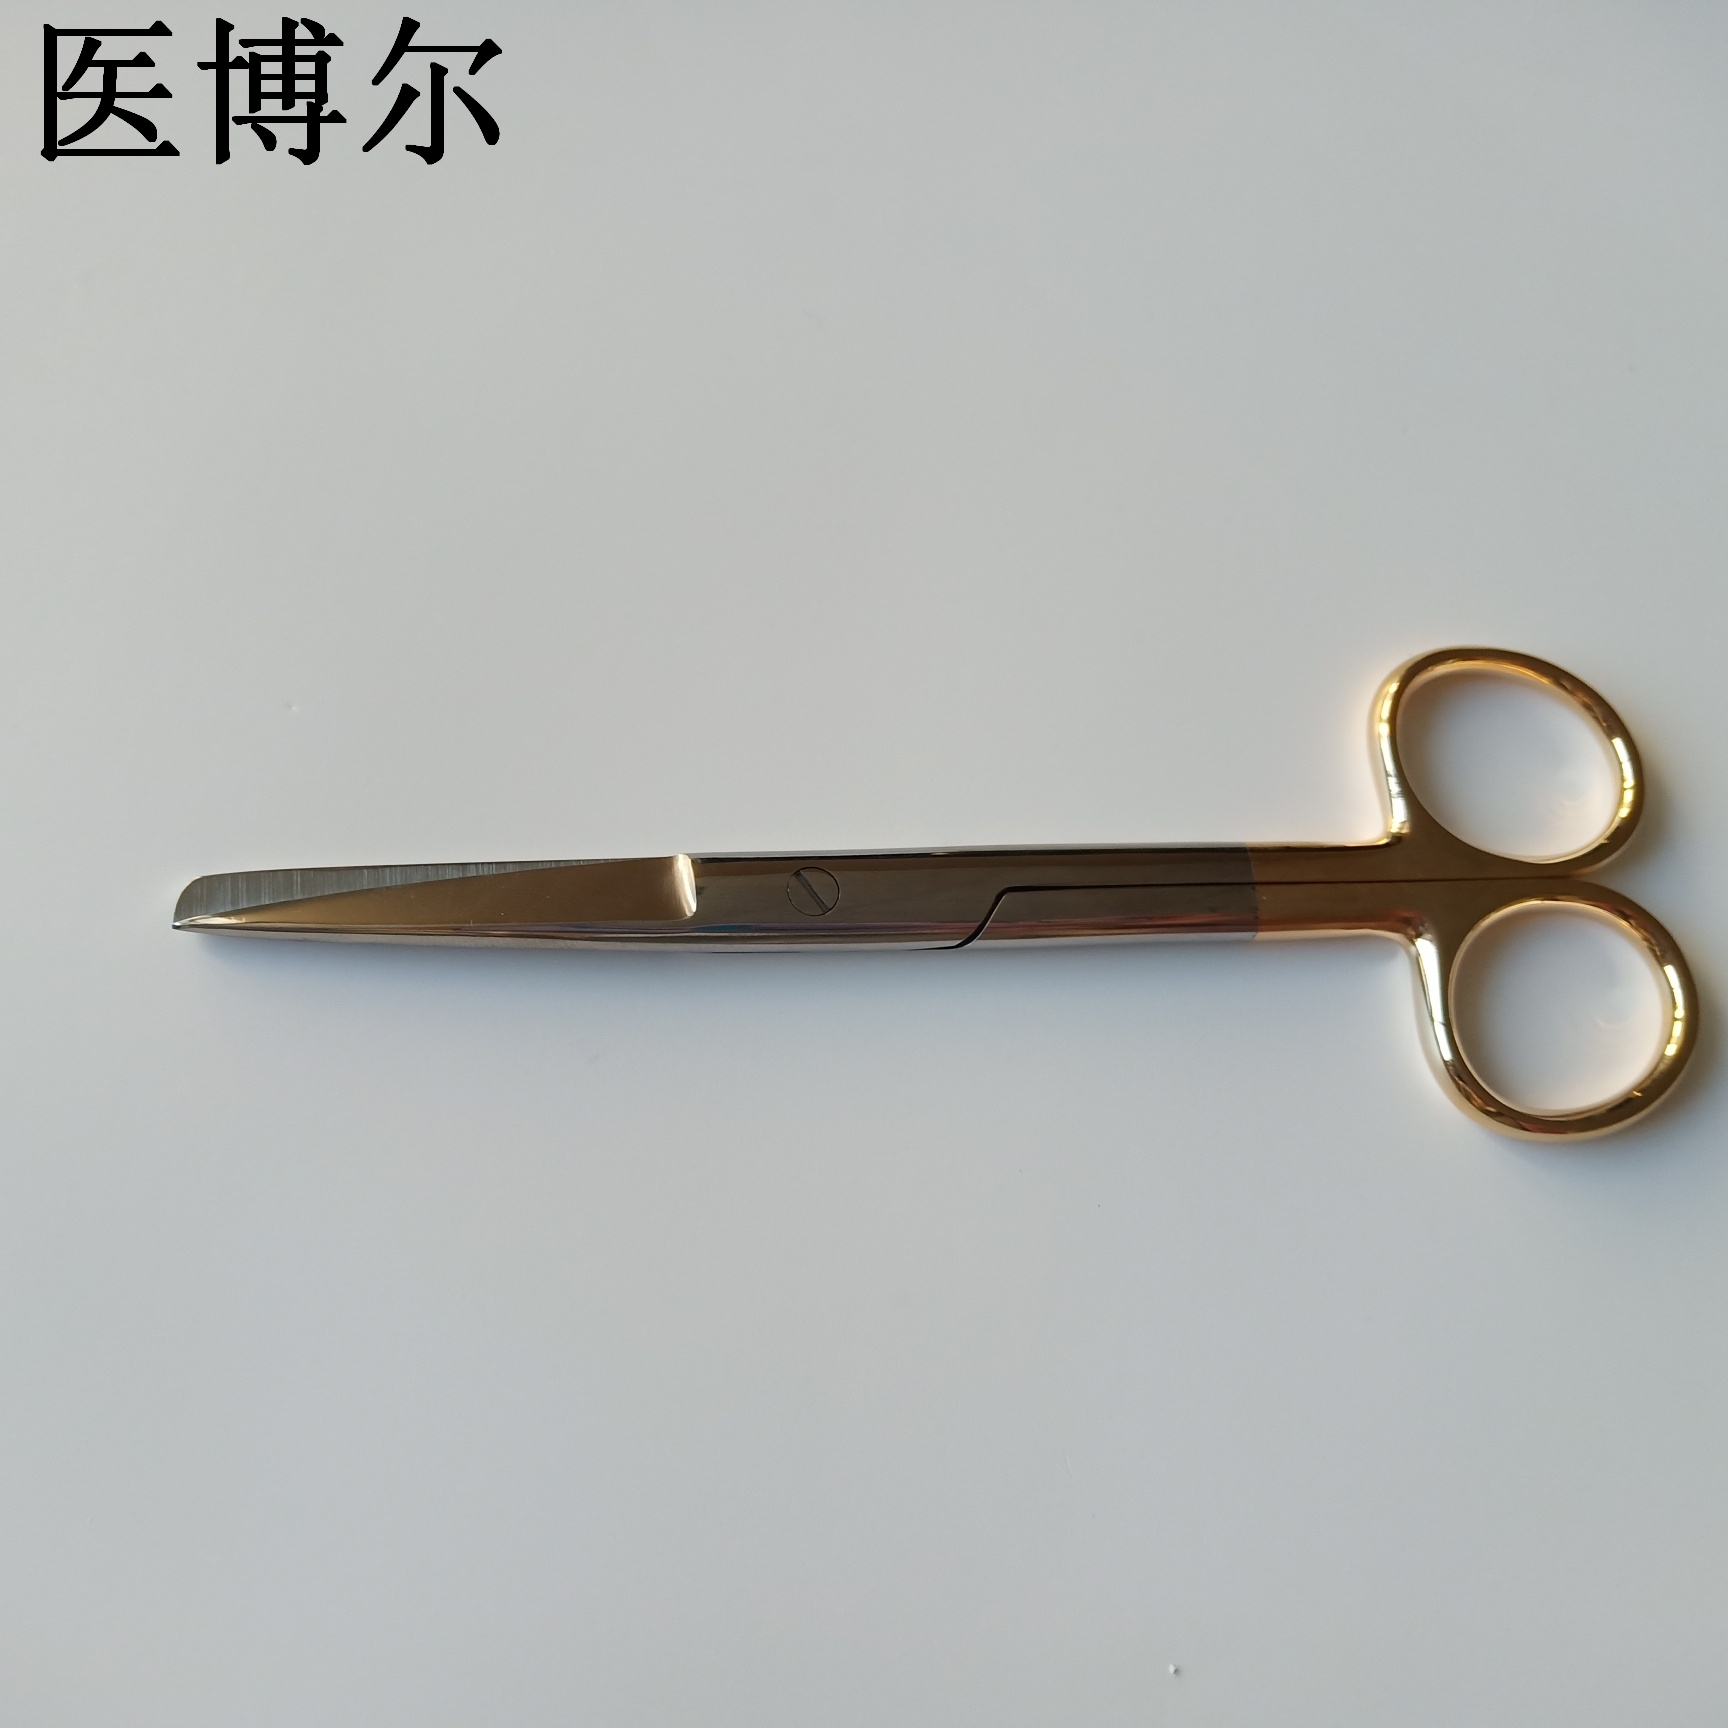 护士剪刀 14cm (3).jpg